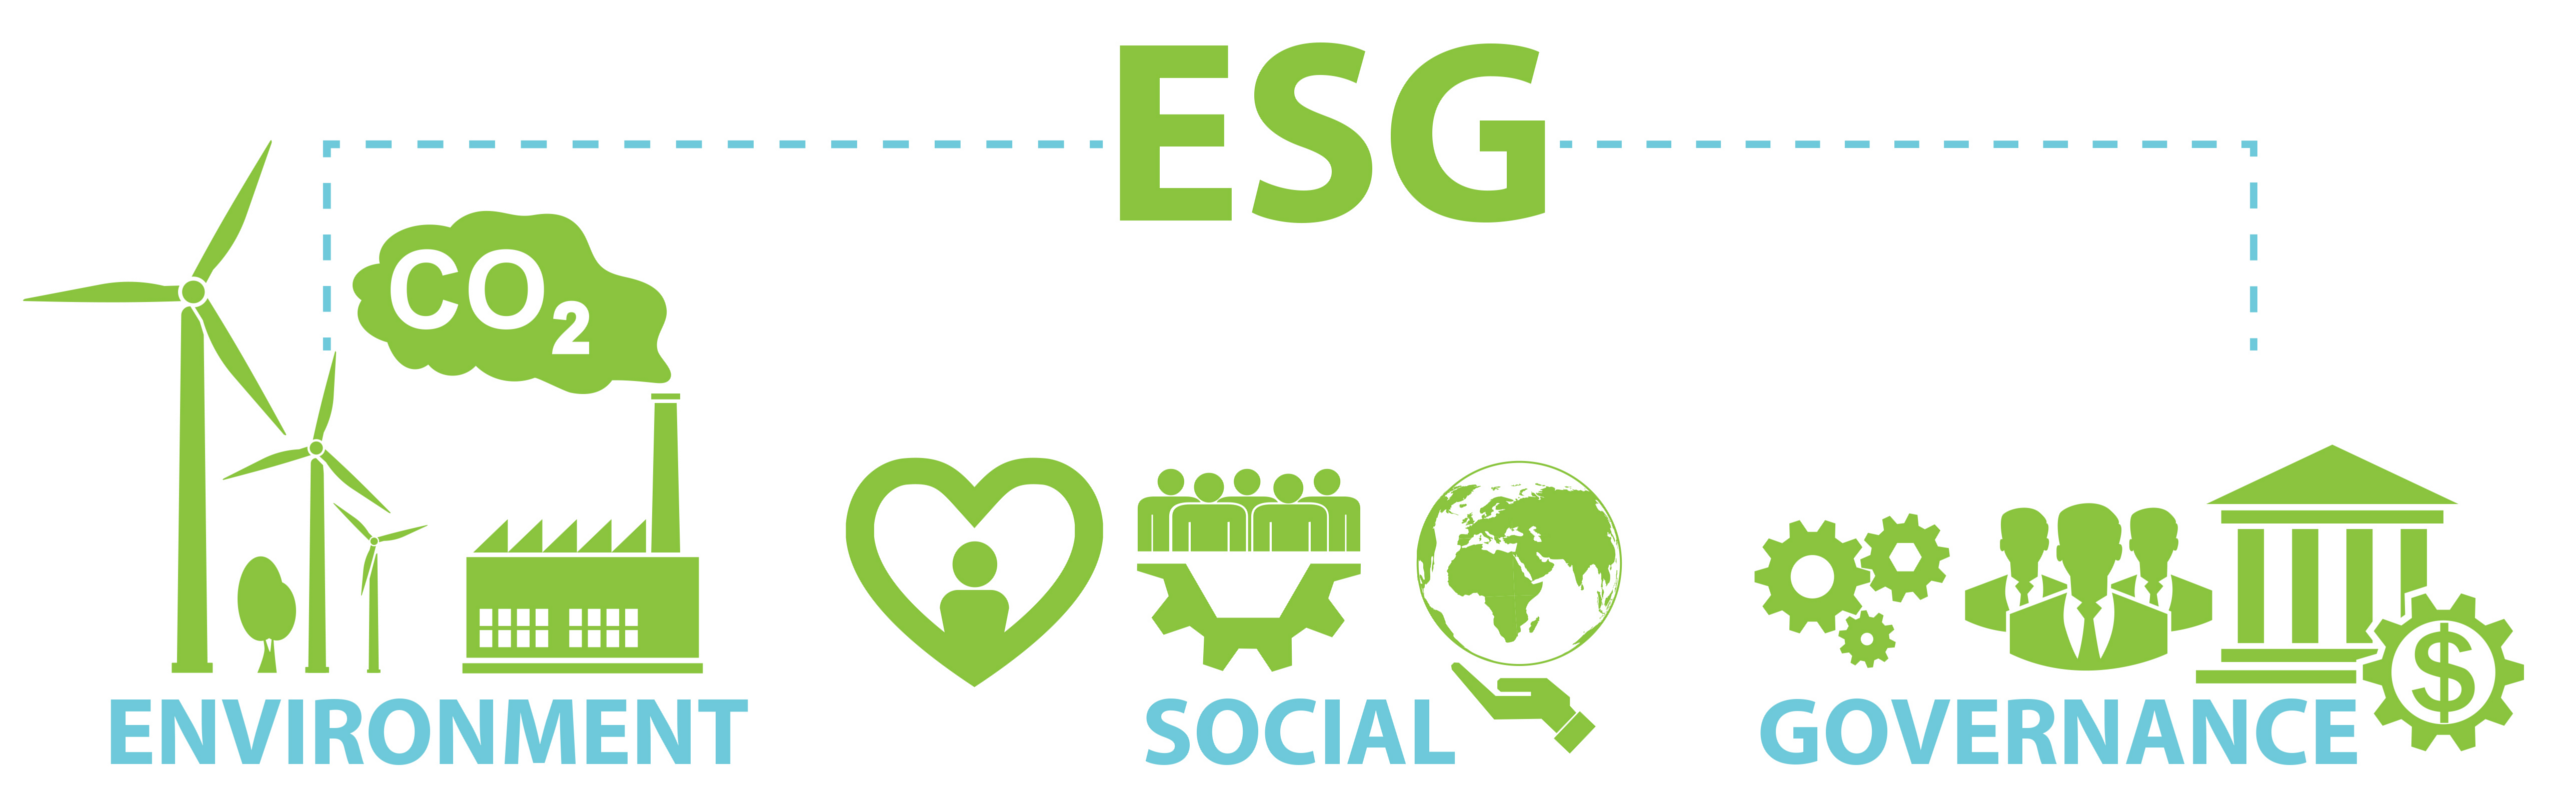 Esg s. ESG проекты. ESG логотип. ESG концепция. ESG экология.